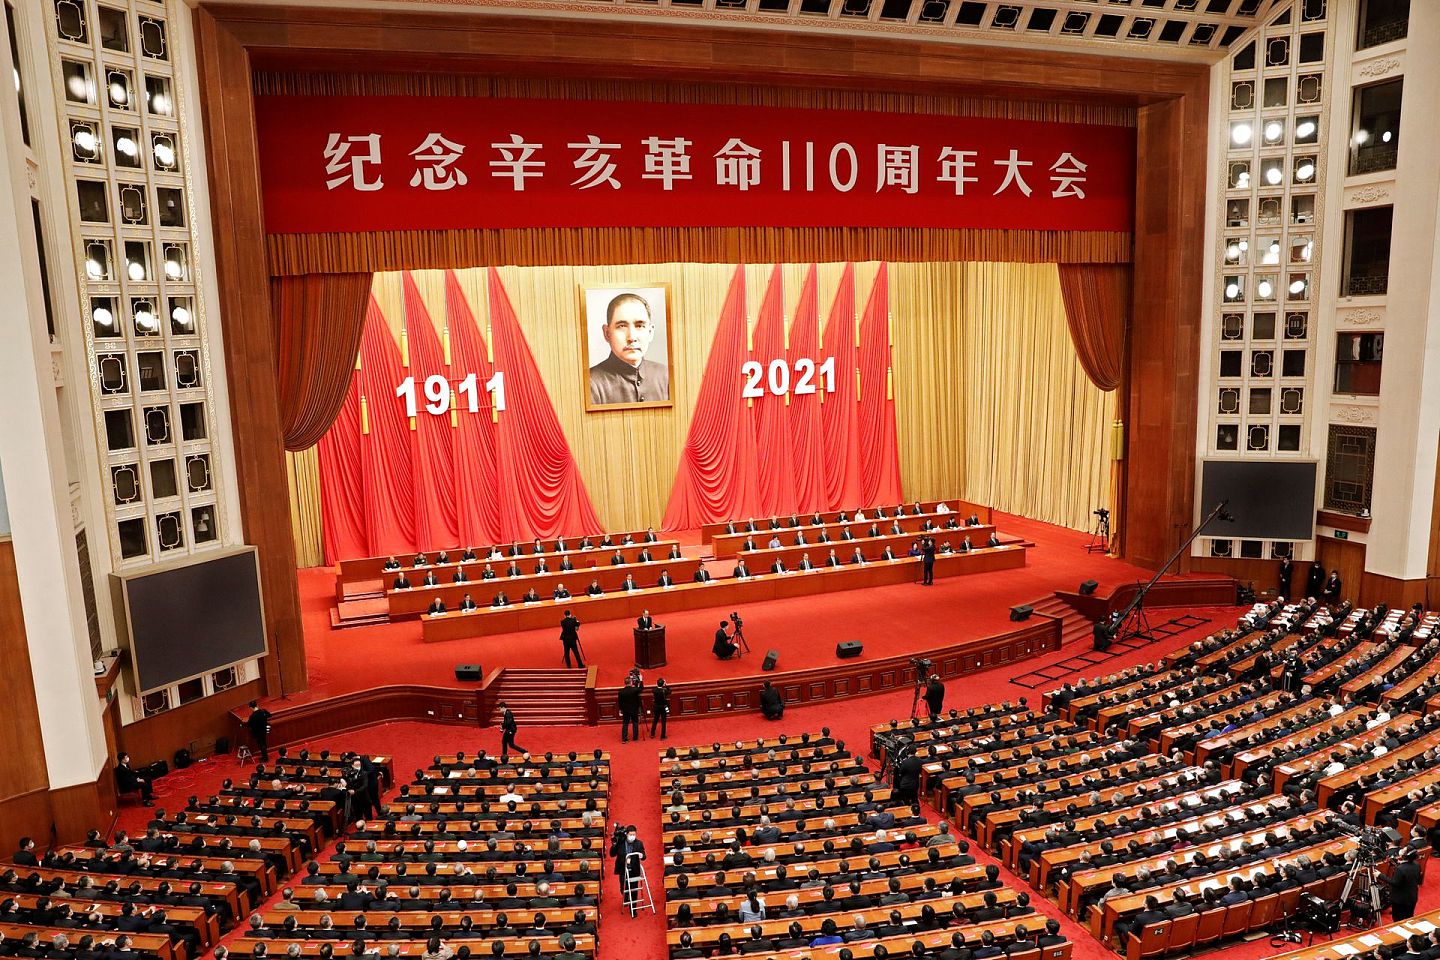 习近平在北京人民大会堂纪念辛亥革命110周年。习近平强调，台湾问题纯属中国内政，不容任何外来干涉。（REUTERS）